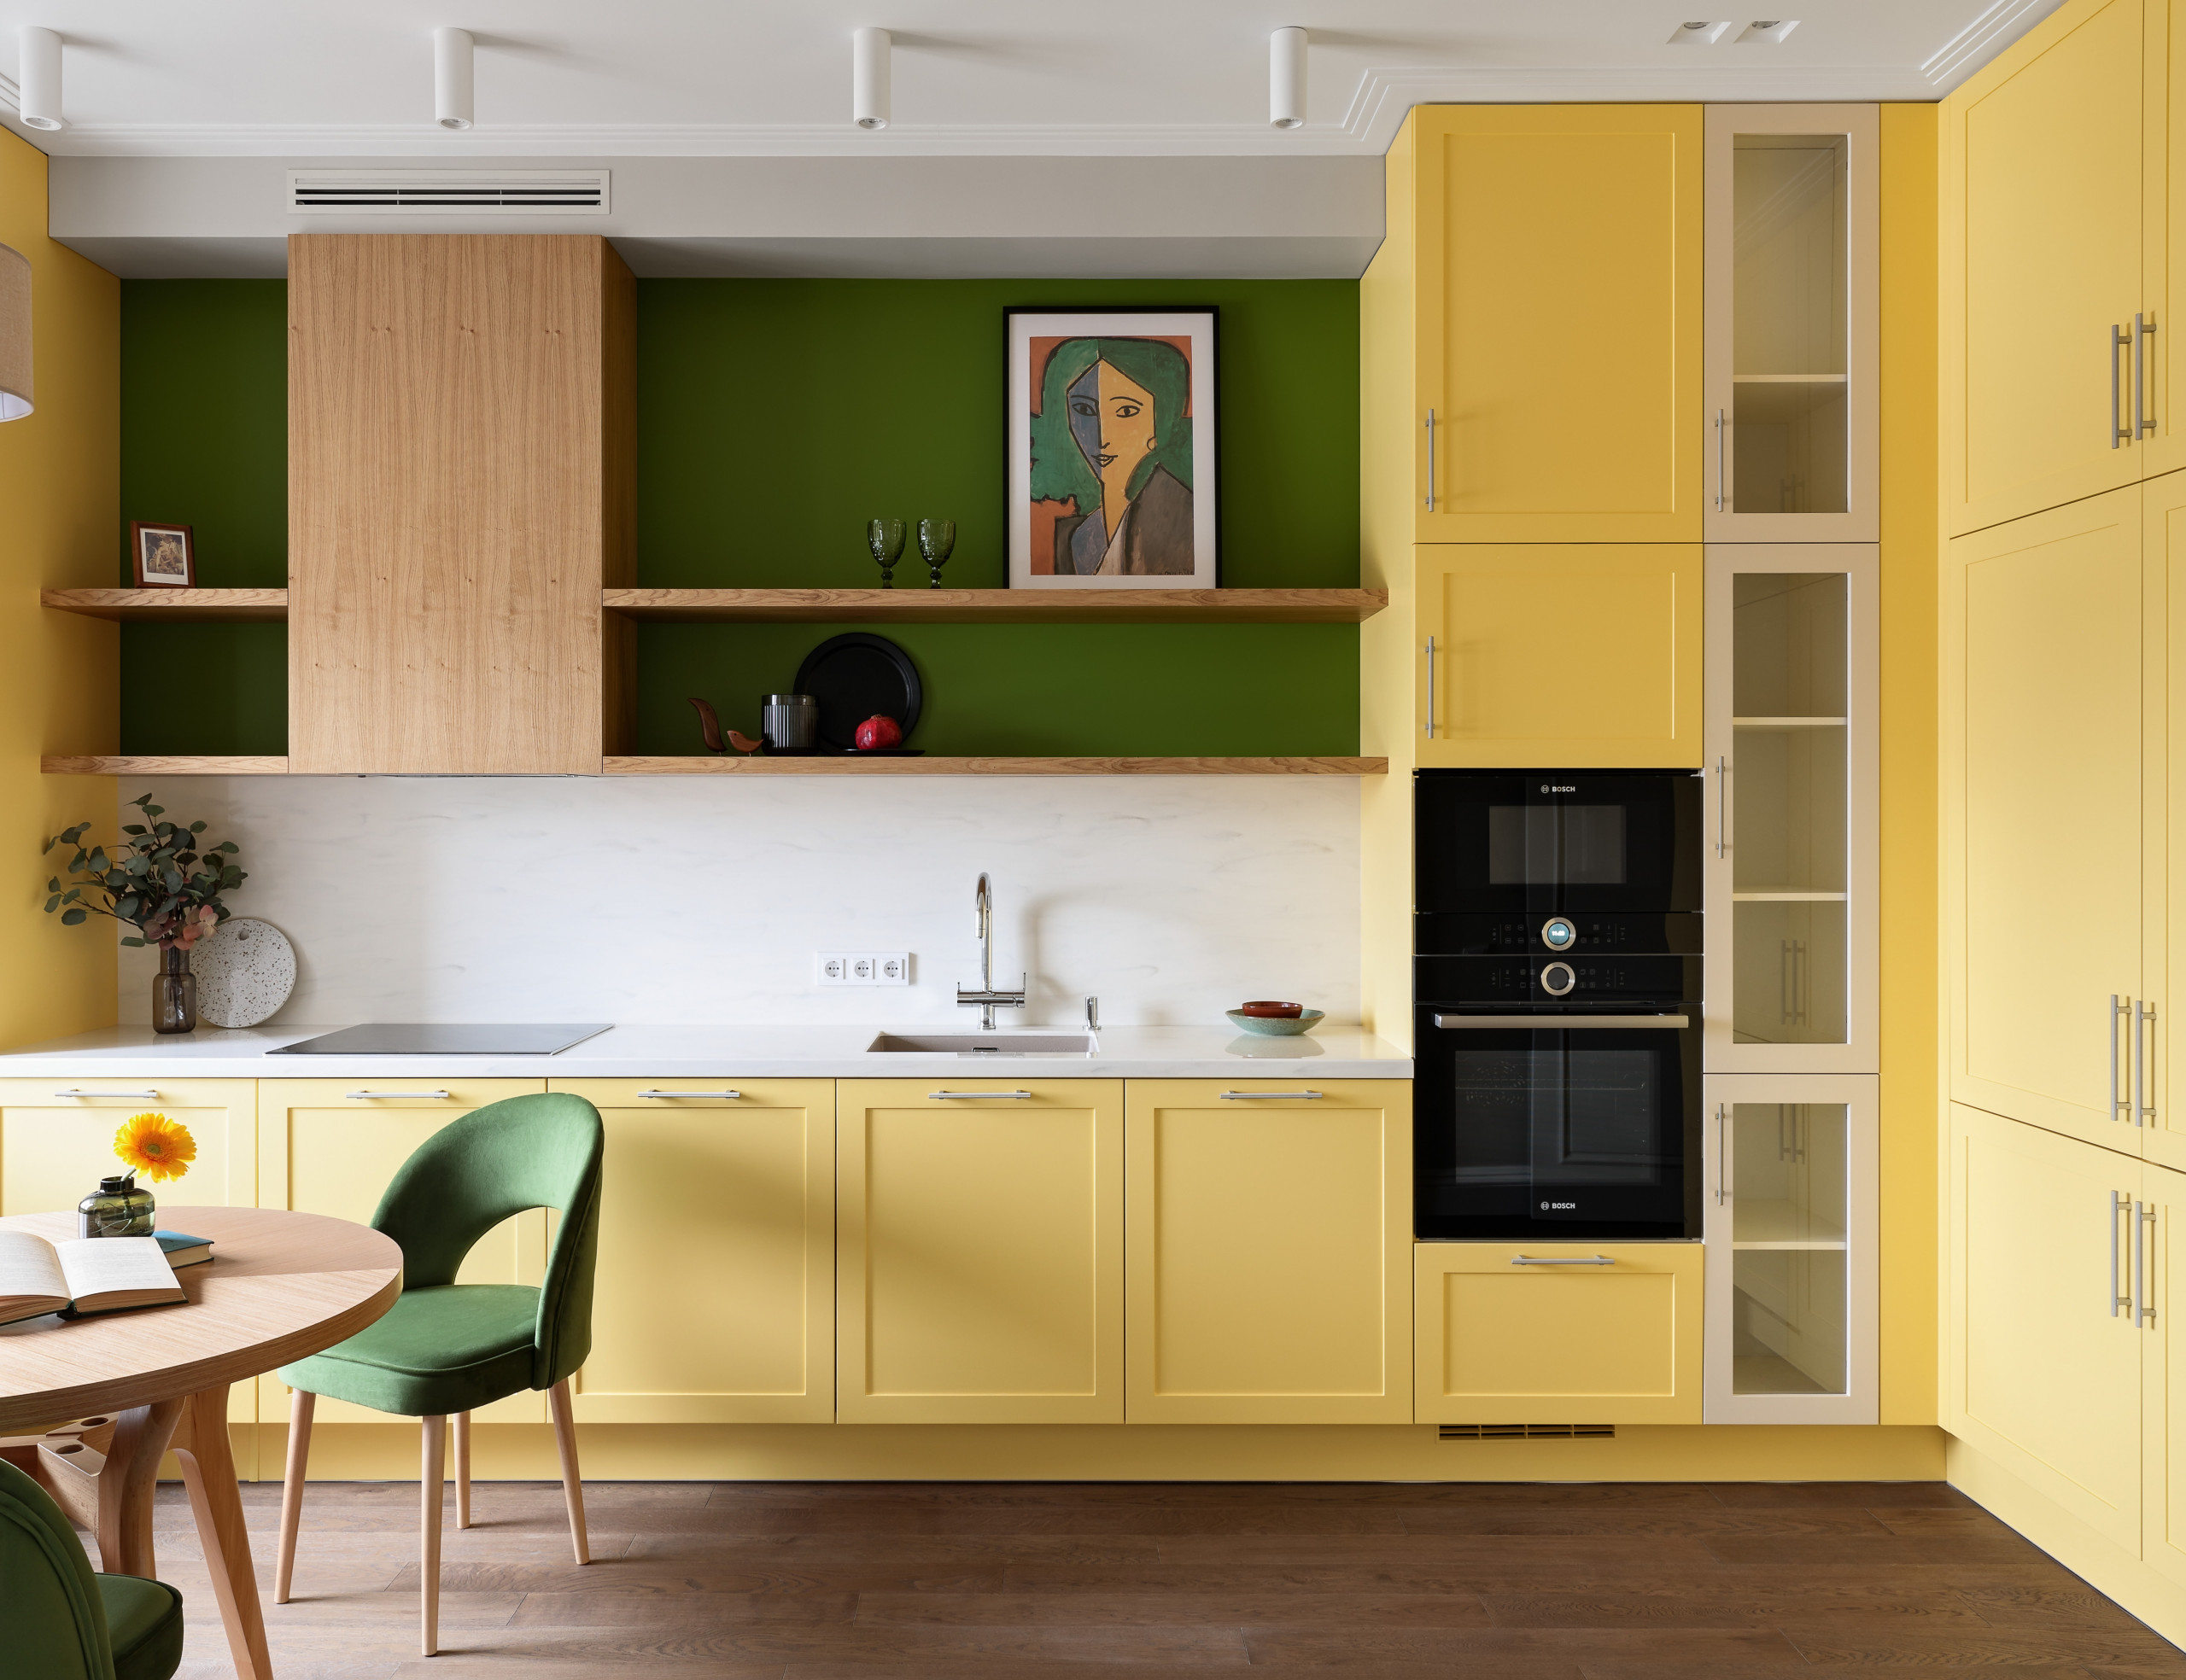 Делаем кухню желтого цвета - модный интерьер для желтой кухни - фото